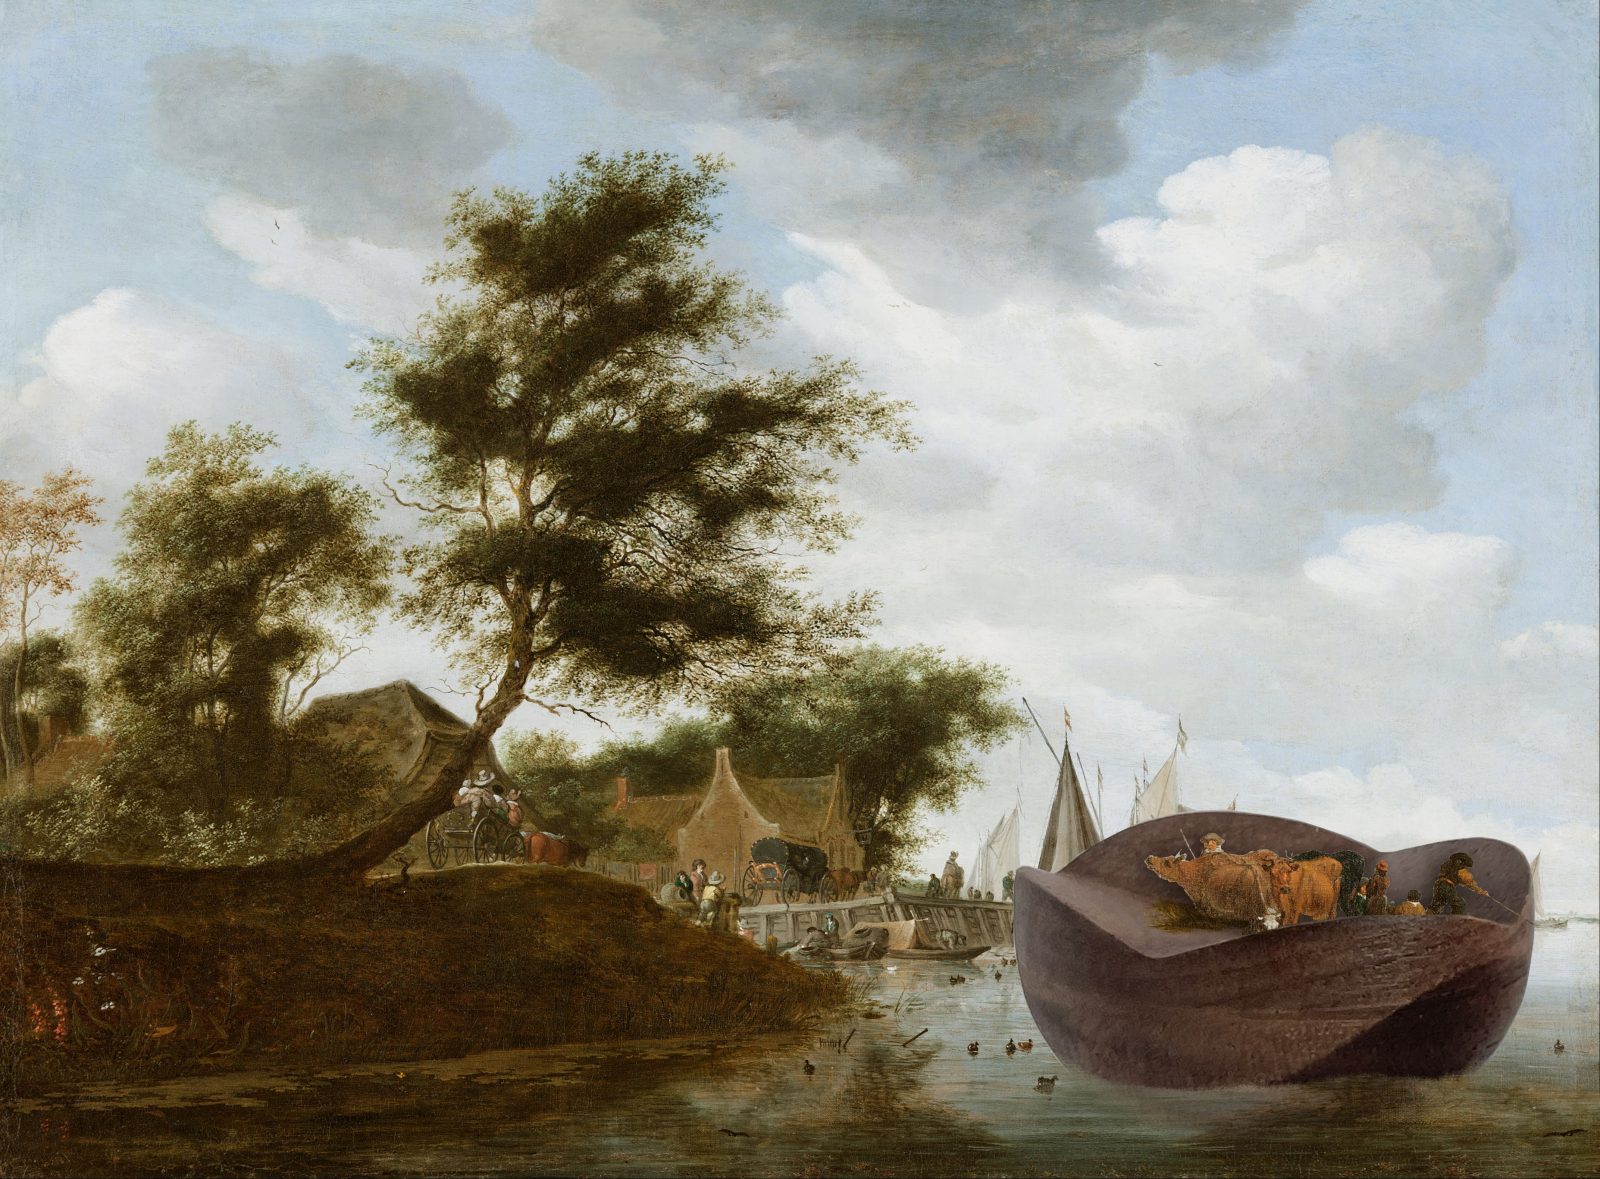 Arka krajobraz wkomponowana w reprodukcję obrazu "Krajobraz rzeczny z promem" Salomon van Ruysdael, 1649